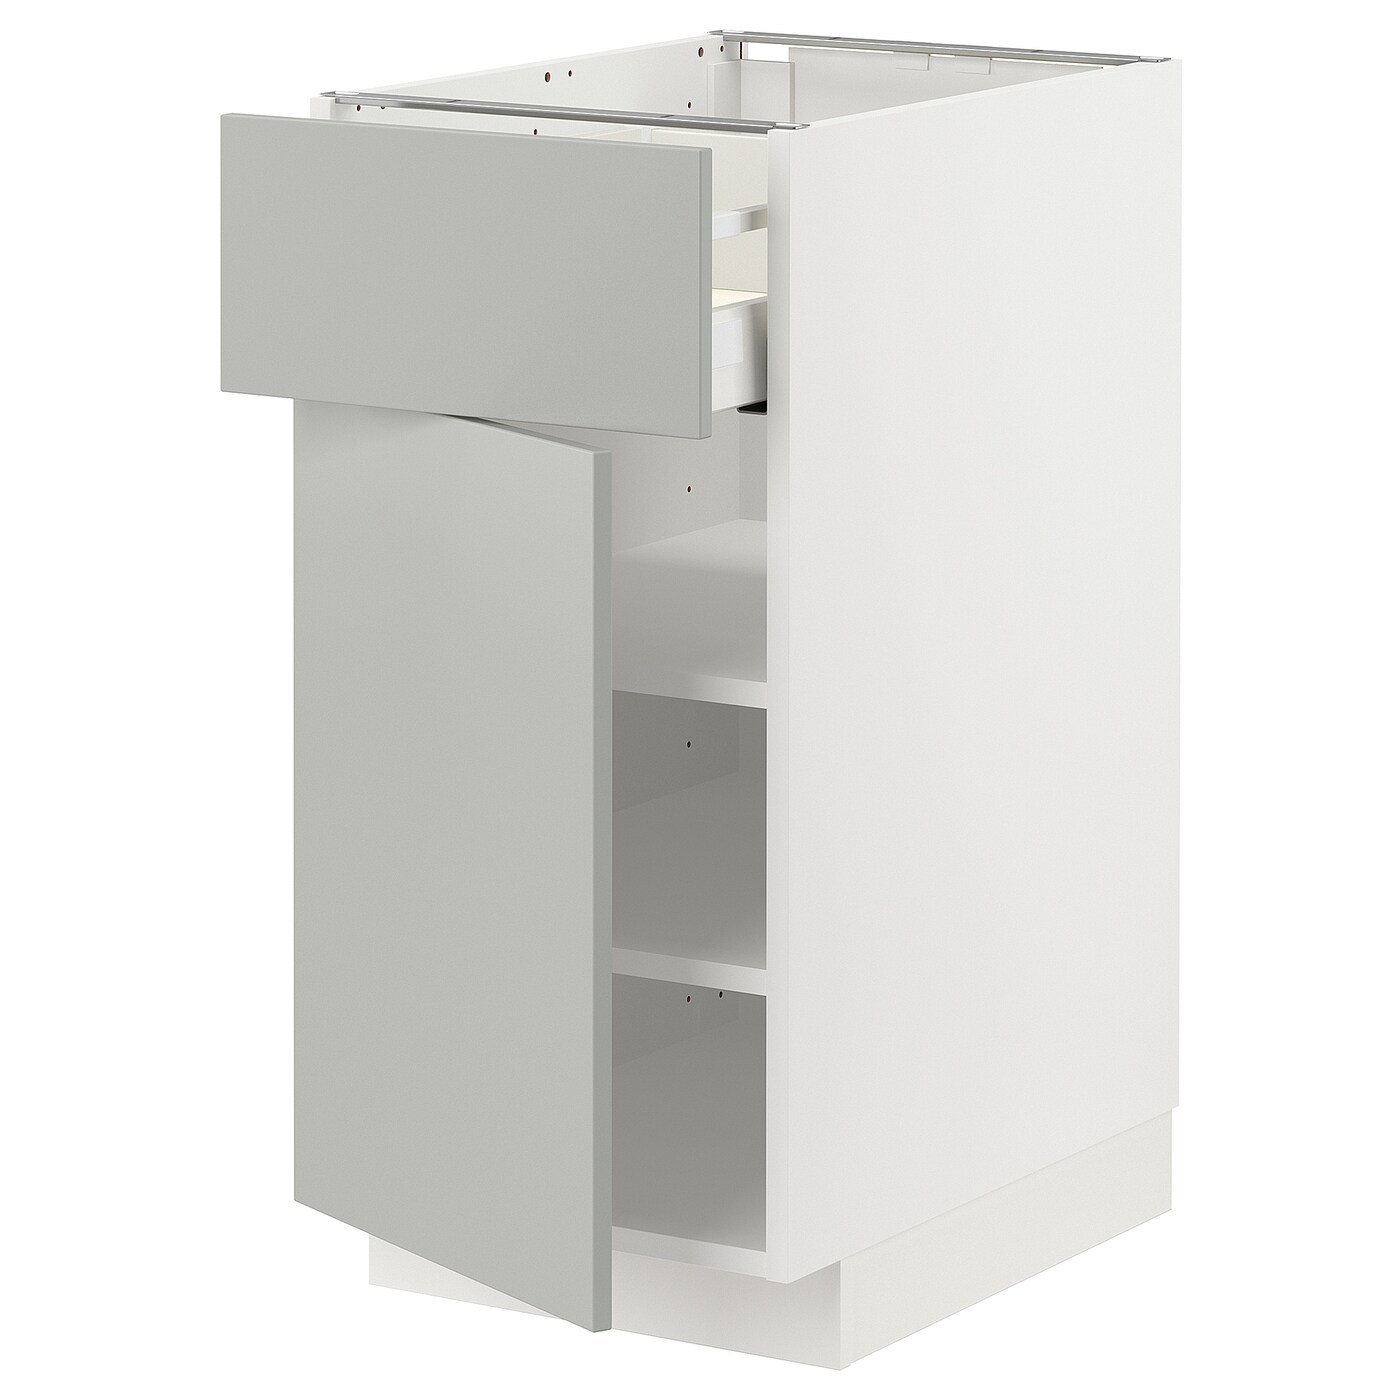 Напольный шкаф - METOD / MAXIMERA IKEA/ МЕТОД/ МАКСИМЕРА ИКЕА,  40х88 см, белый/светло-серый